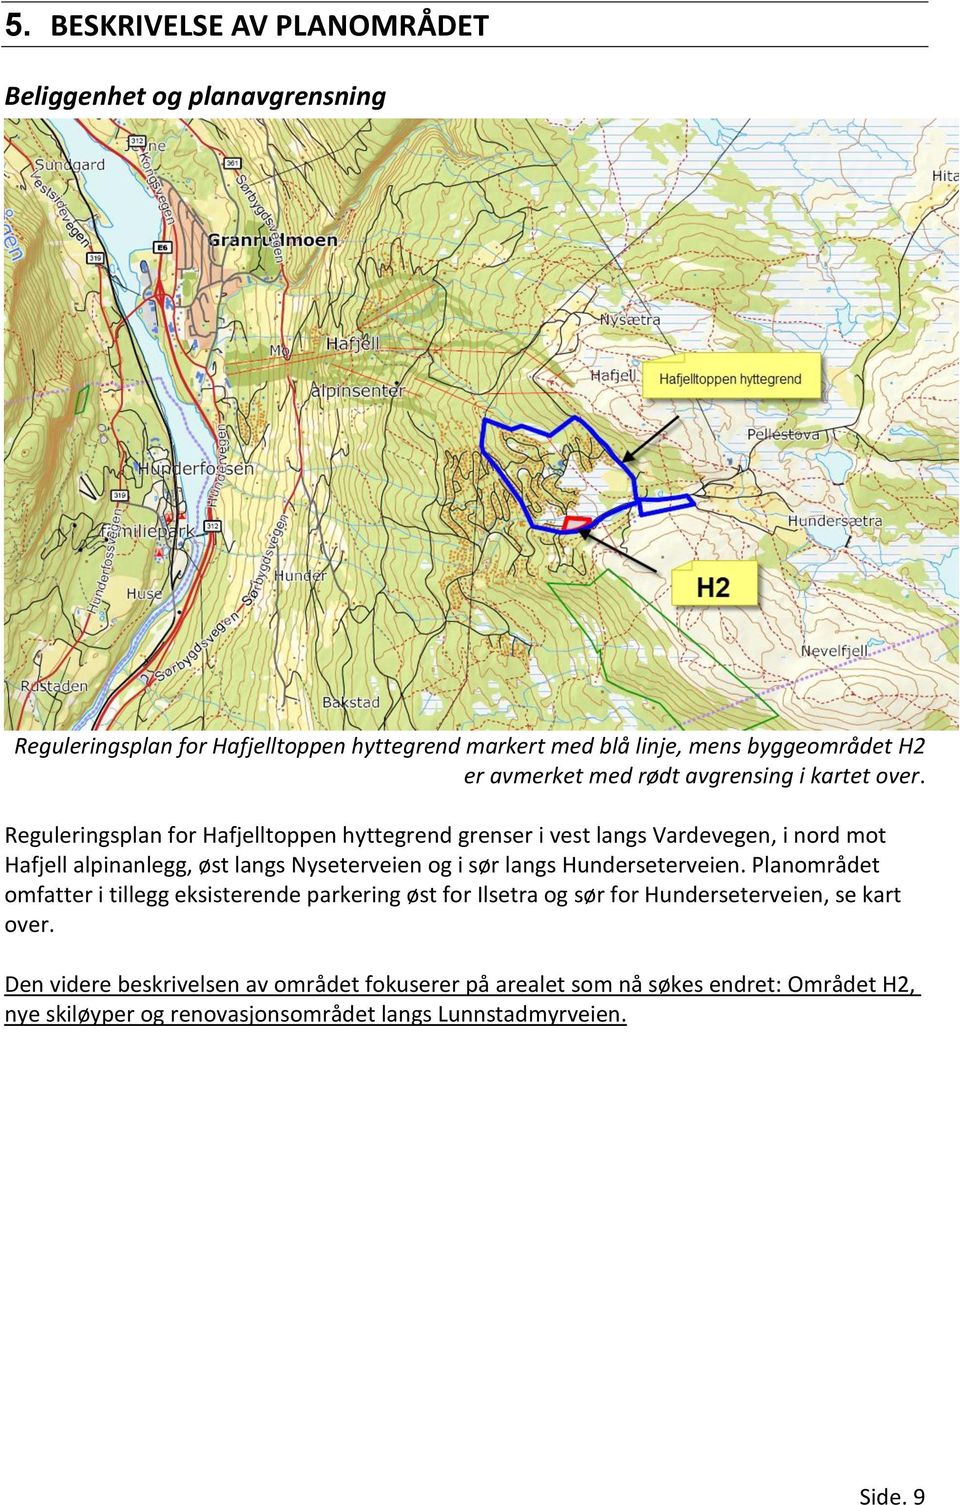 Reguleringsplan for Hafjelltoppen hyttegrend grenser i vest langs Vardevegen, i nord mot Hafjell alpinanlegg, øst langs Nyseterveien og i sør langs